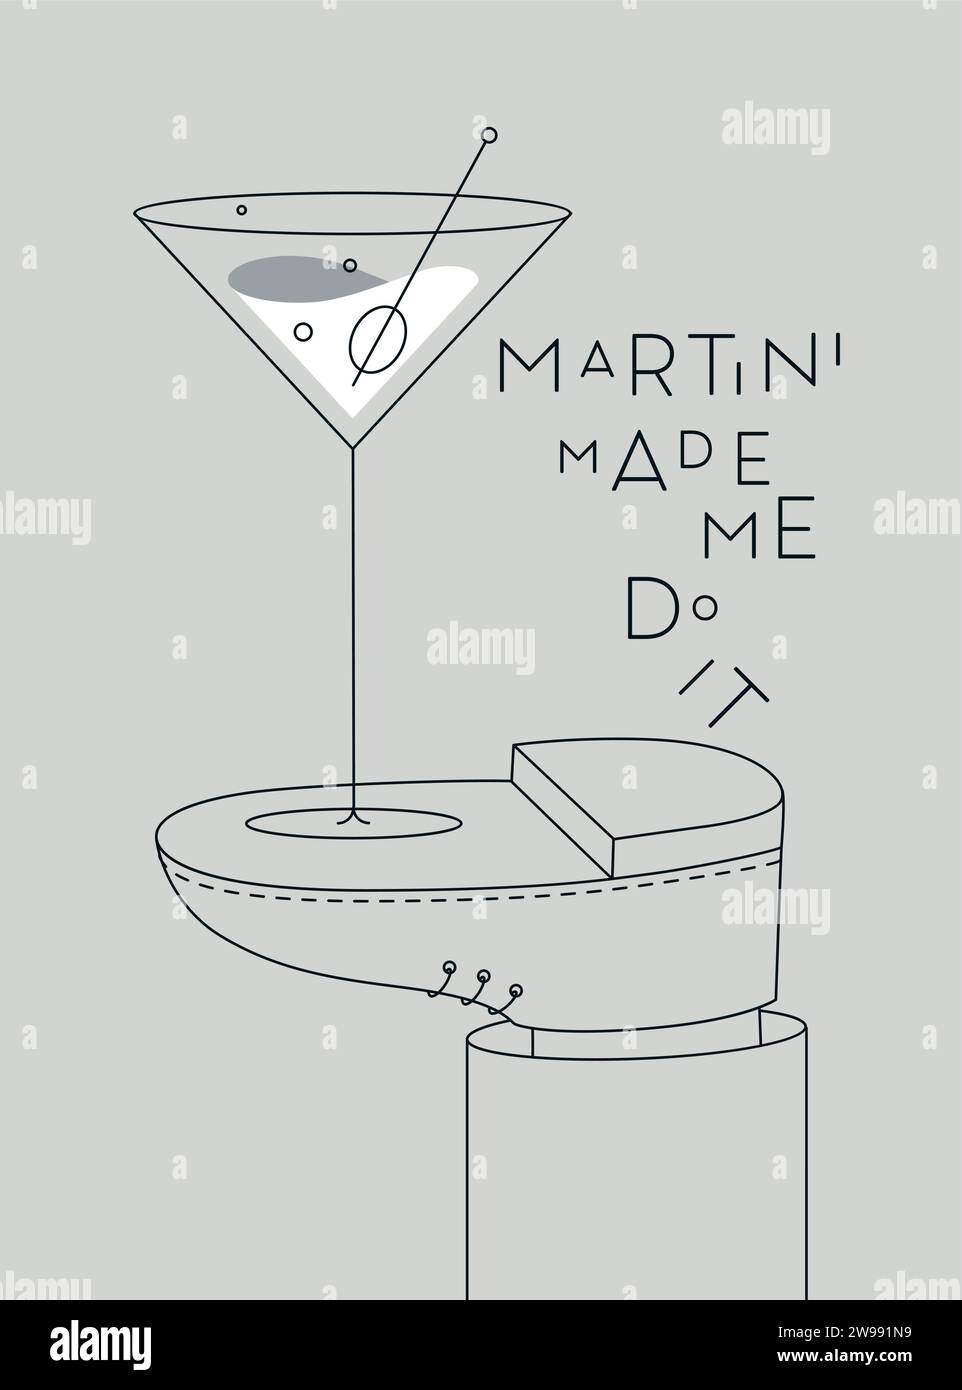 Alkoholposter. Glas mit Martini-Schriftzug hat mich dazu gebracht, es steht zu Fuß und zeichnet im Linienstil auf grauem Hintergrund Stock Vektor